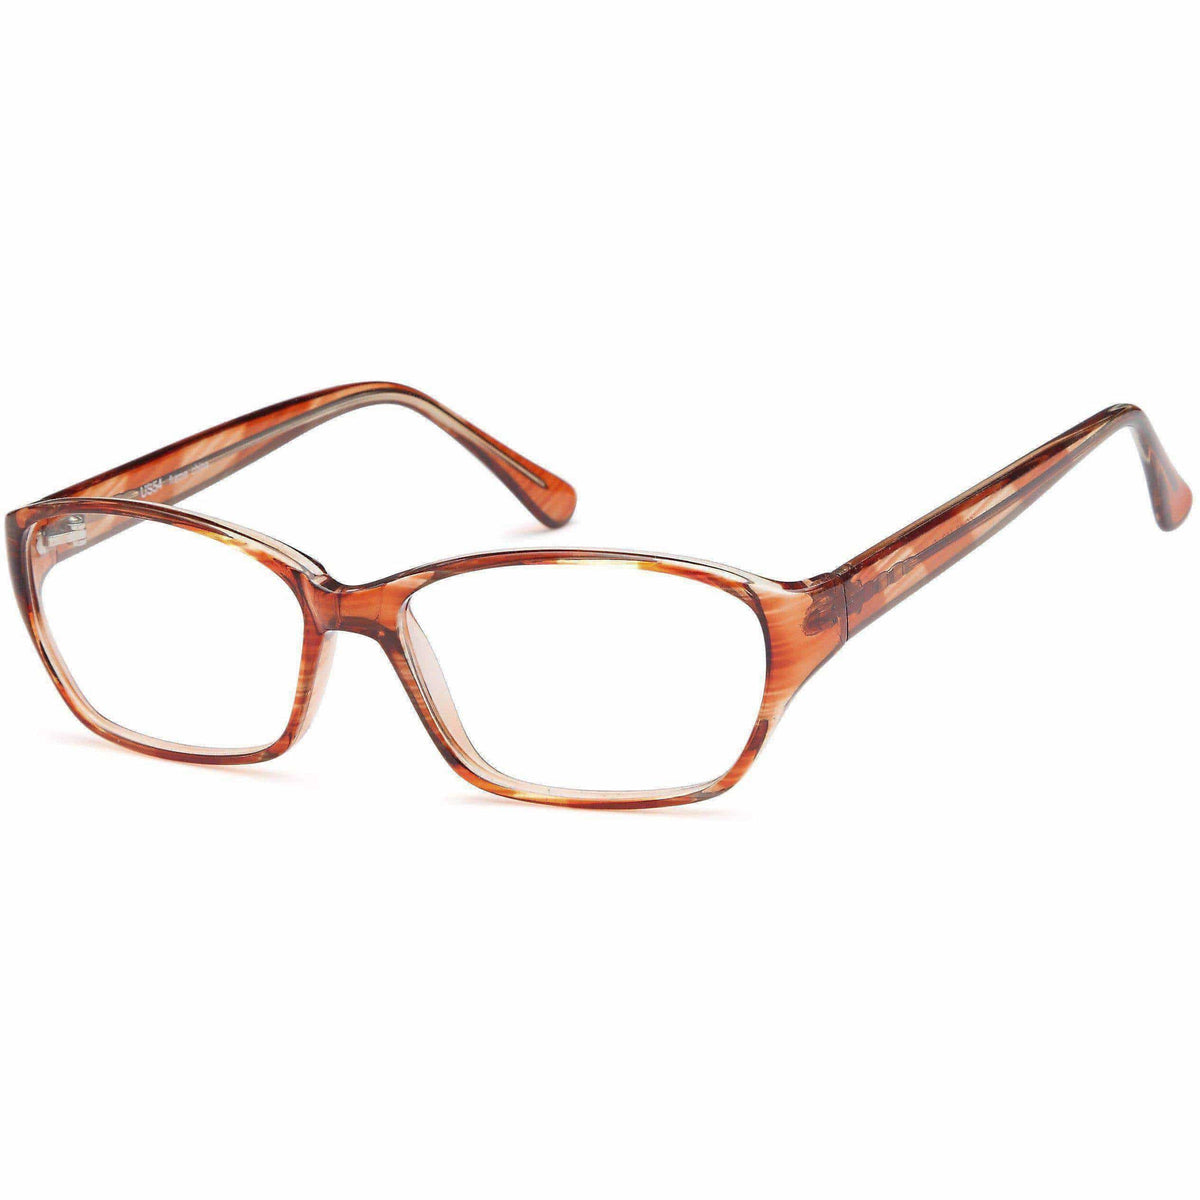 Order Cheap Prescription Eyeglasses Online Overnight Glasses